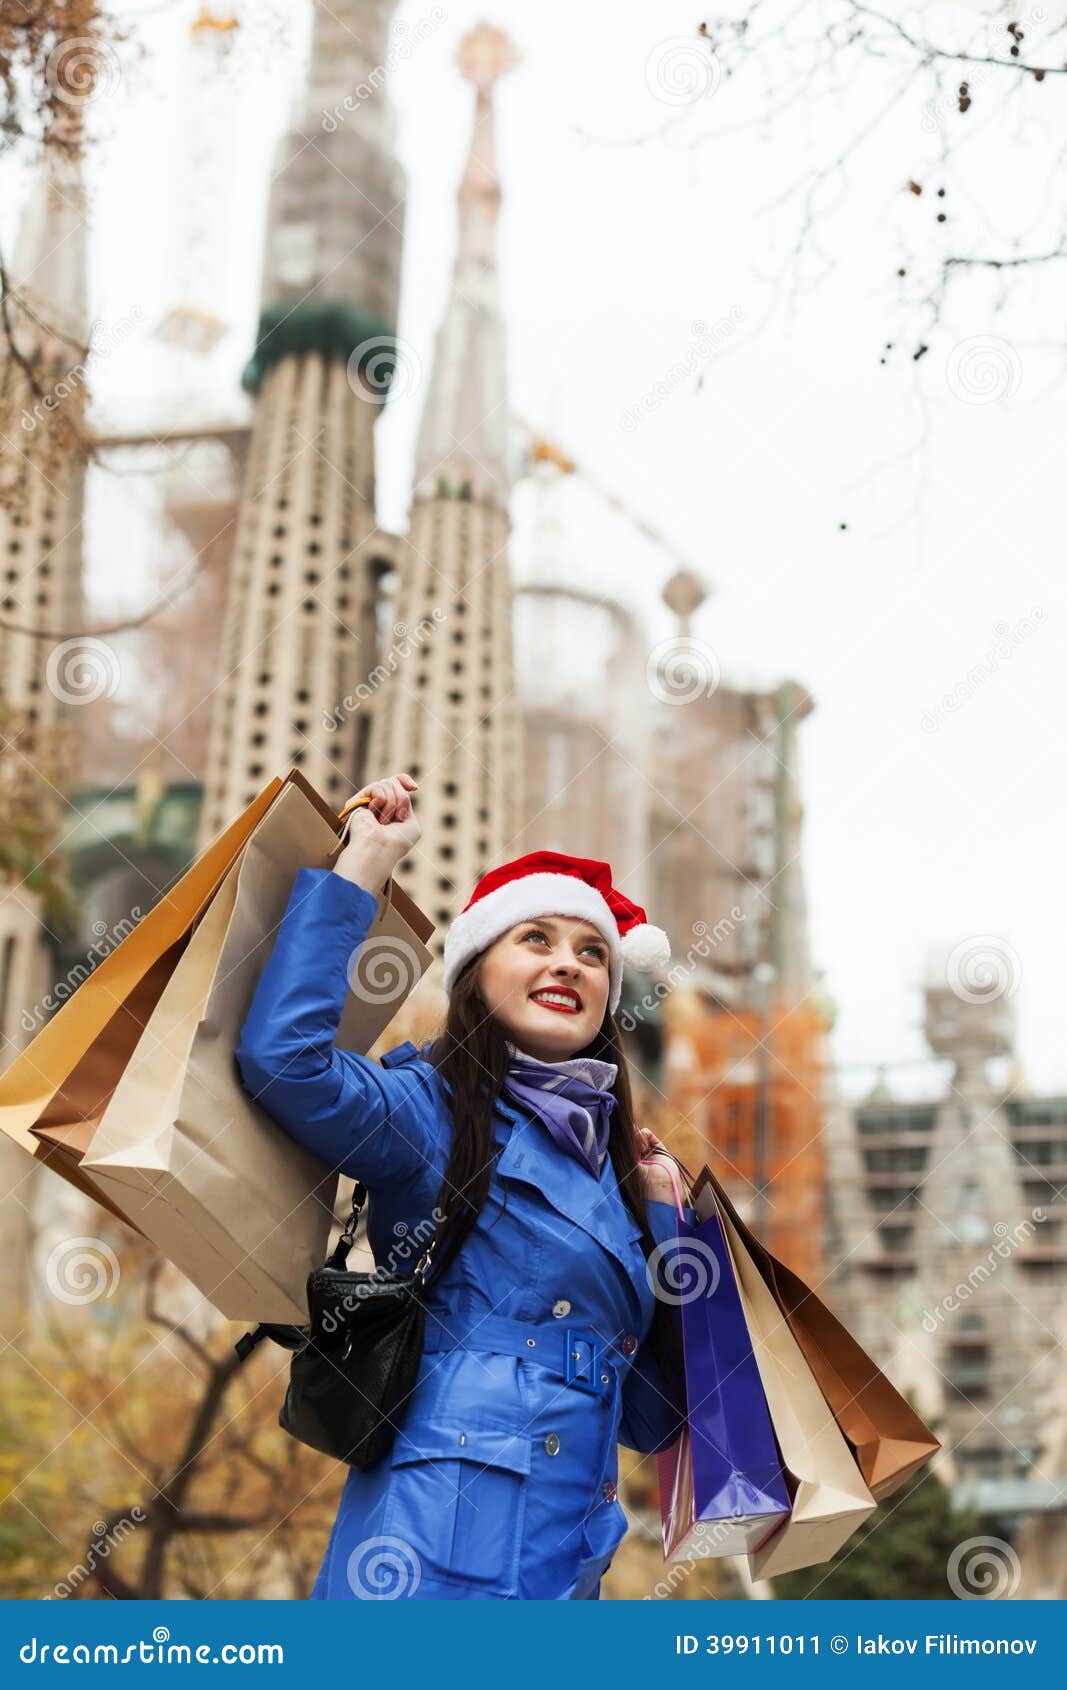 Uśmiechnięta dziewczyna z zakupami w Barcelona. Uśmiechnięta dziewczyna z zakupami przeciw Sagrada familia podczas Bożenarodzeniowych sprzedaży w Barcelona